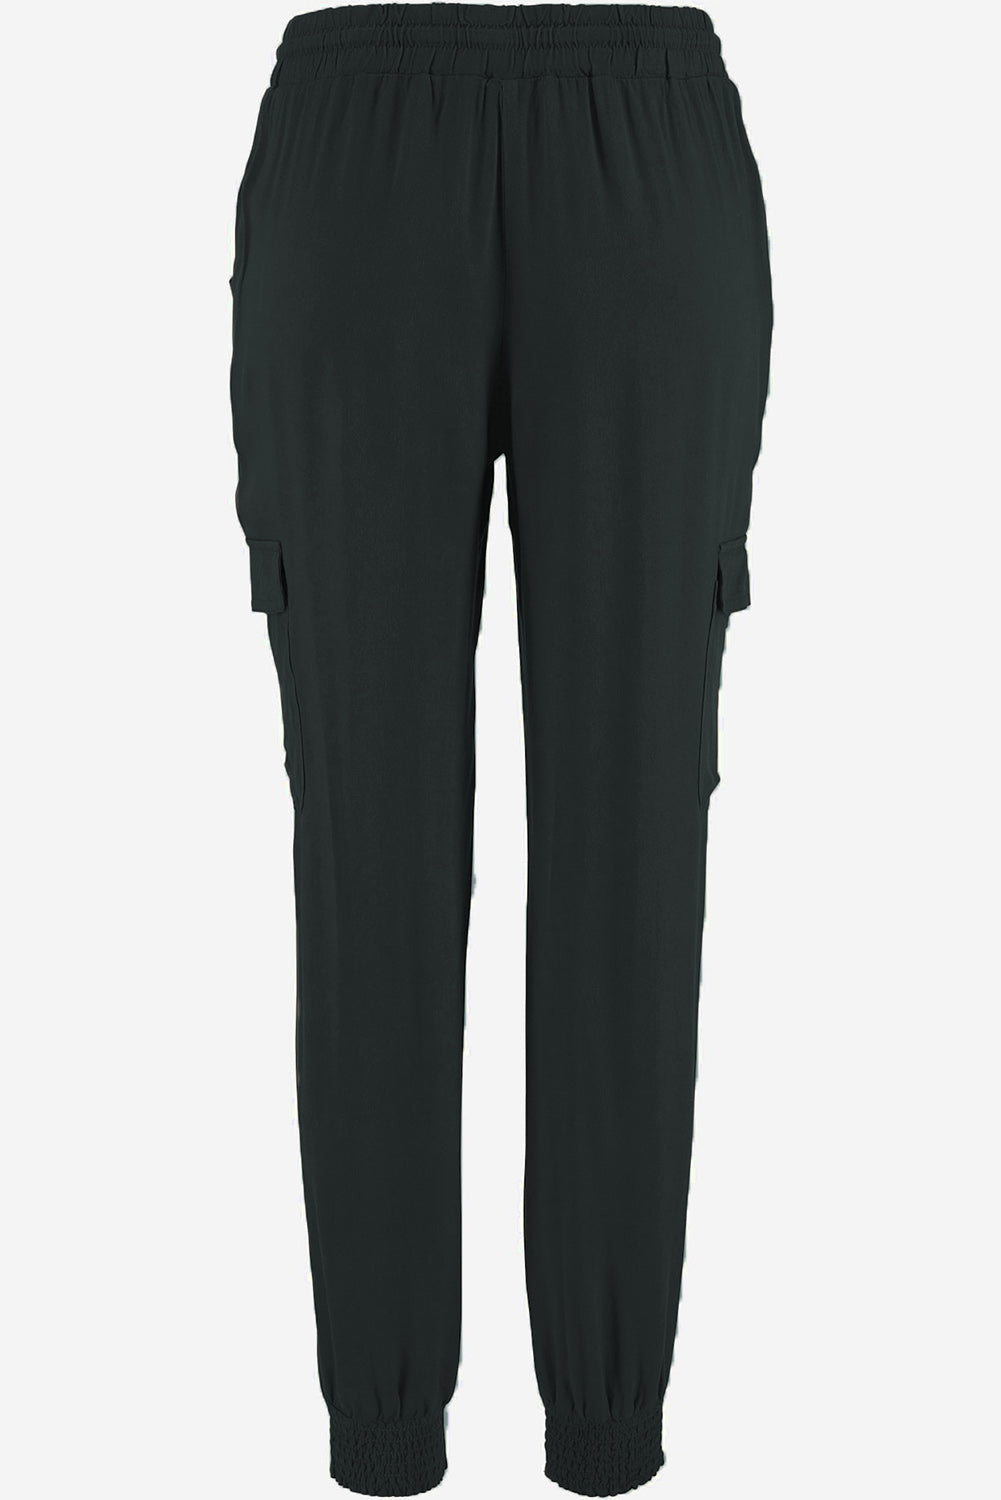 Pantaloni da jogging a vita alta con coulisse e vestibilità slim con tasche laterali grigie